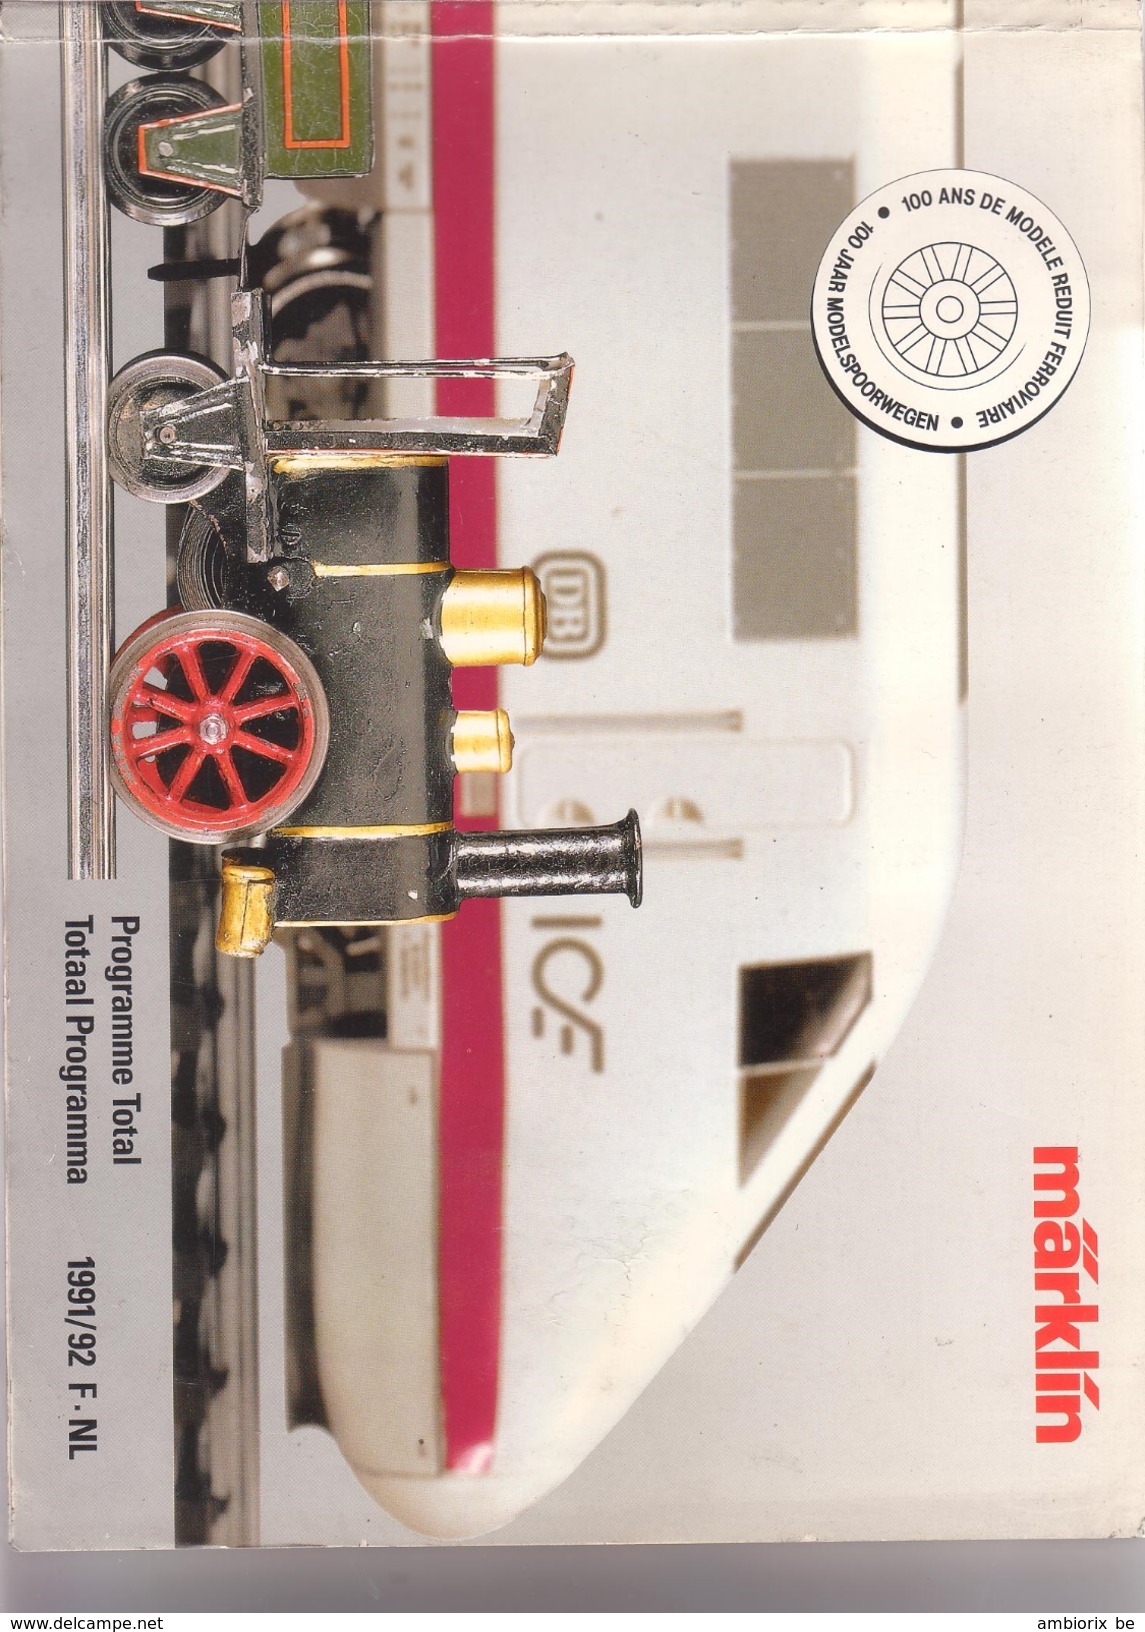 Marklin - Catalogue 1991-92 - Français